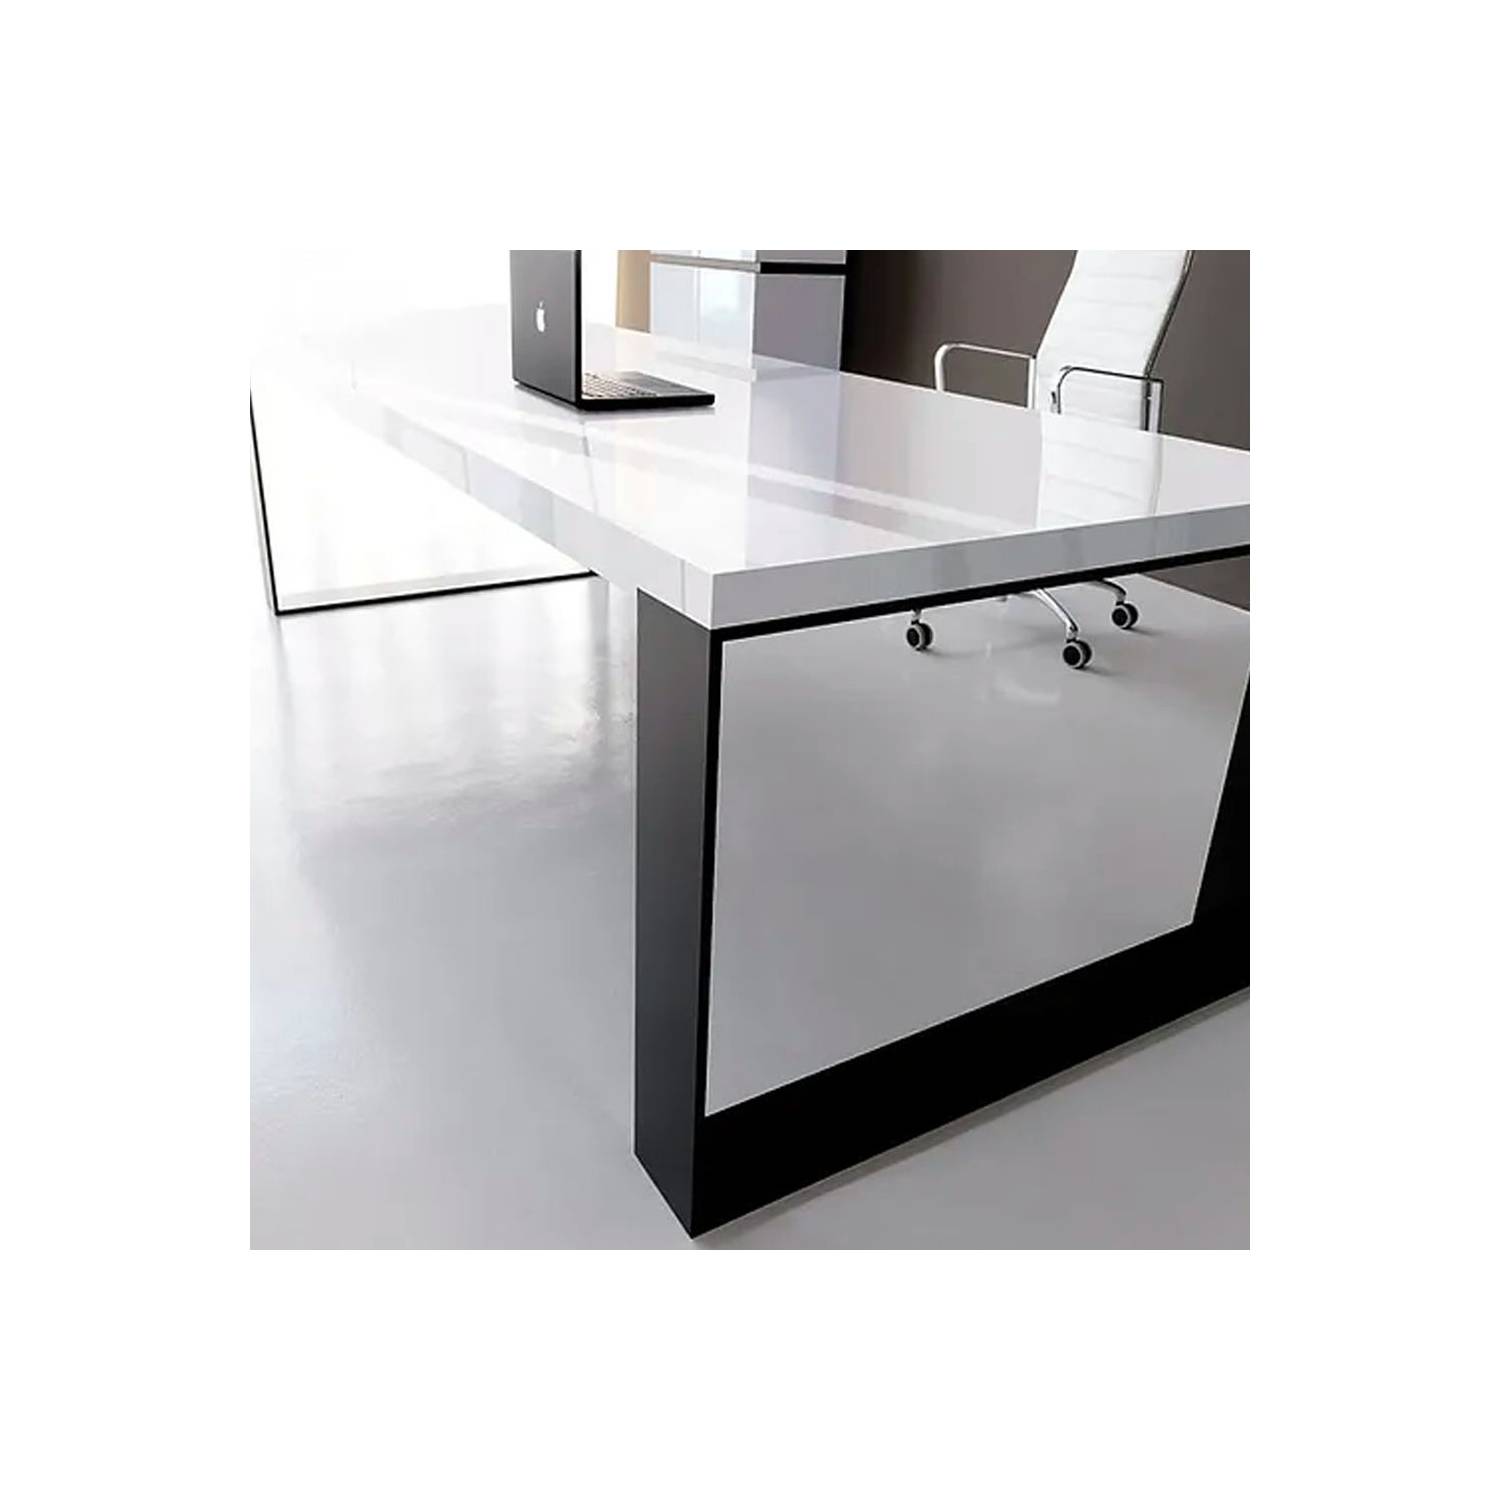 ESCRITORIO RECTANGULAR ENSAMBLA DE 140X60 16 MM A1 PVC - Design Center  Furniture